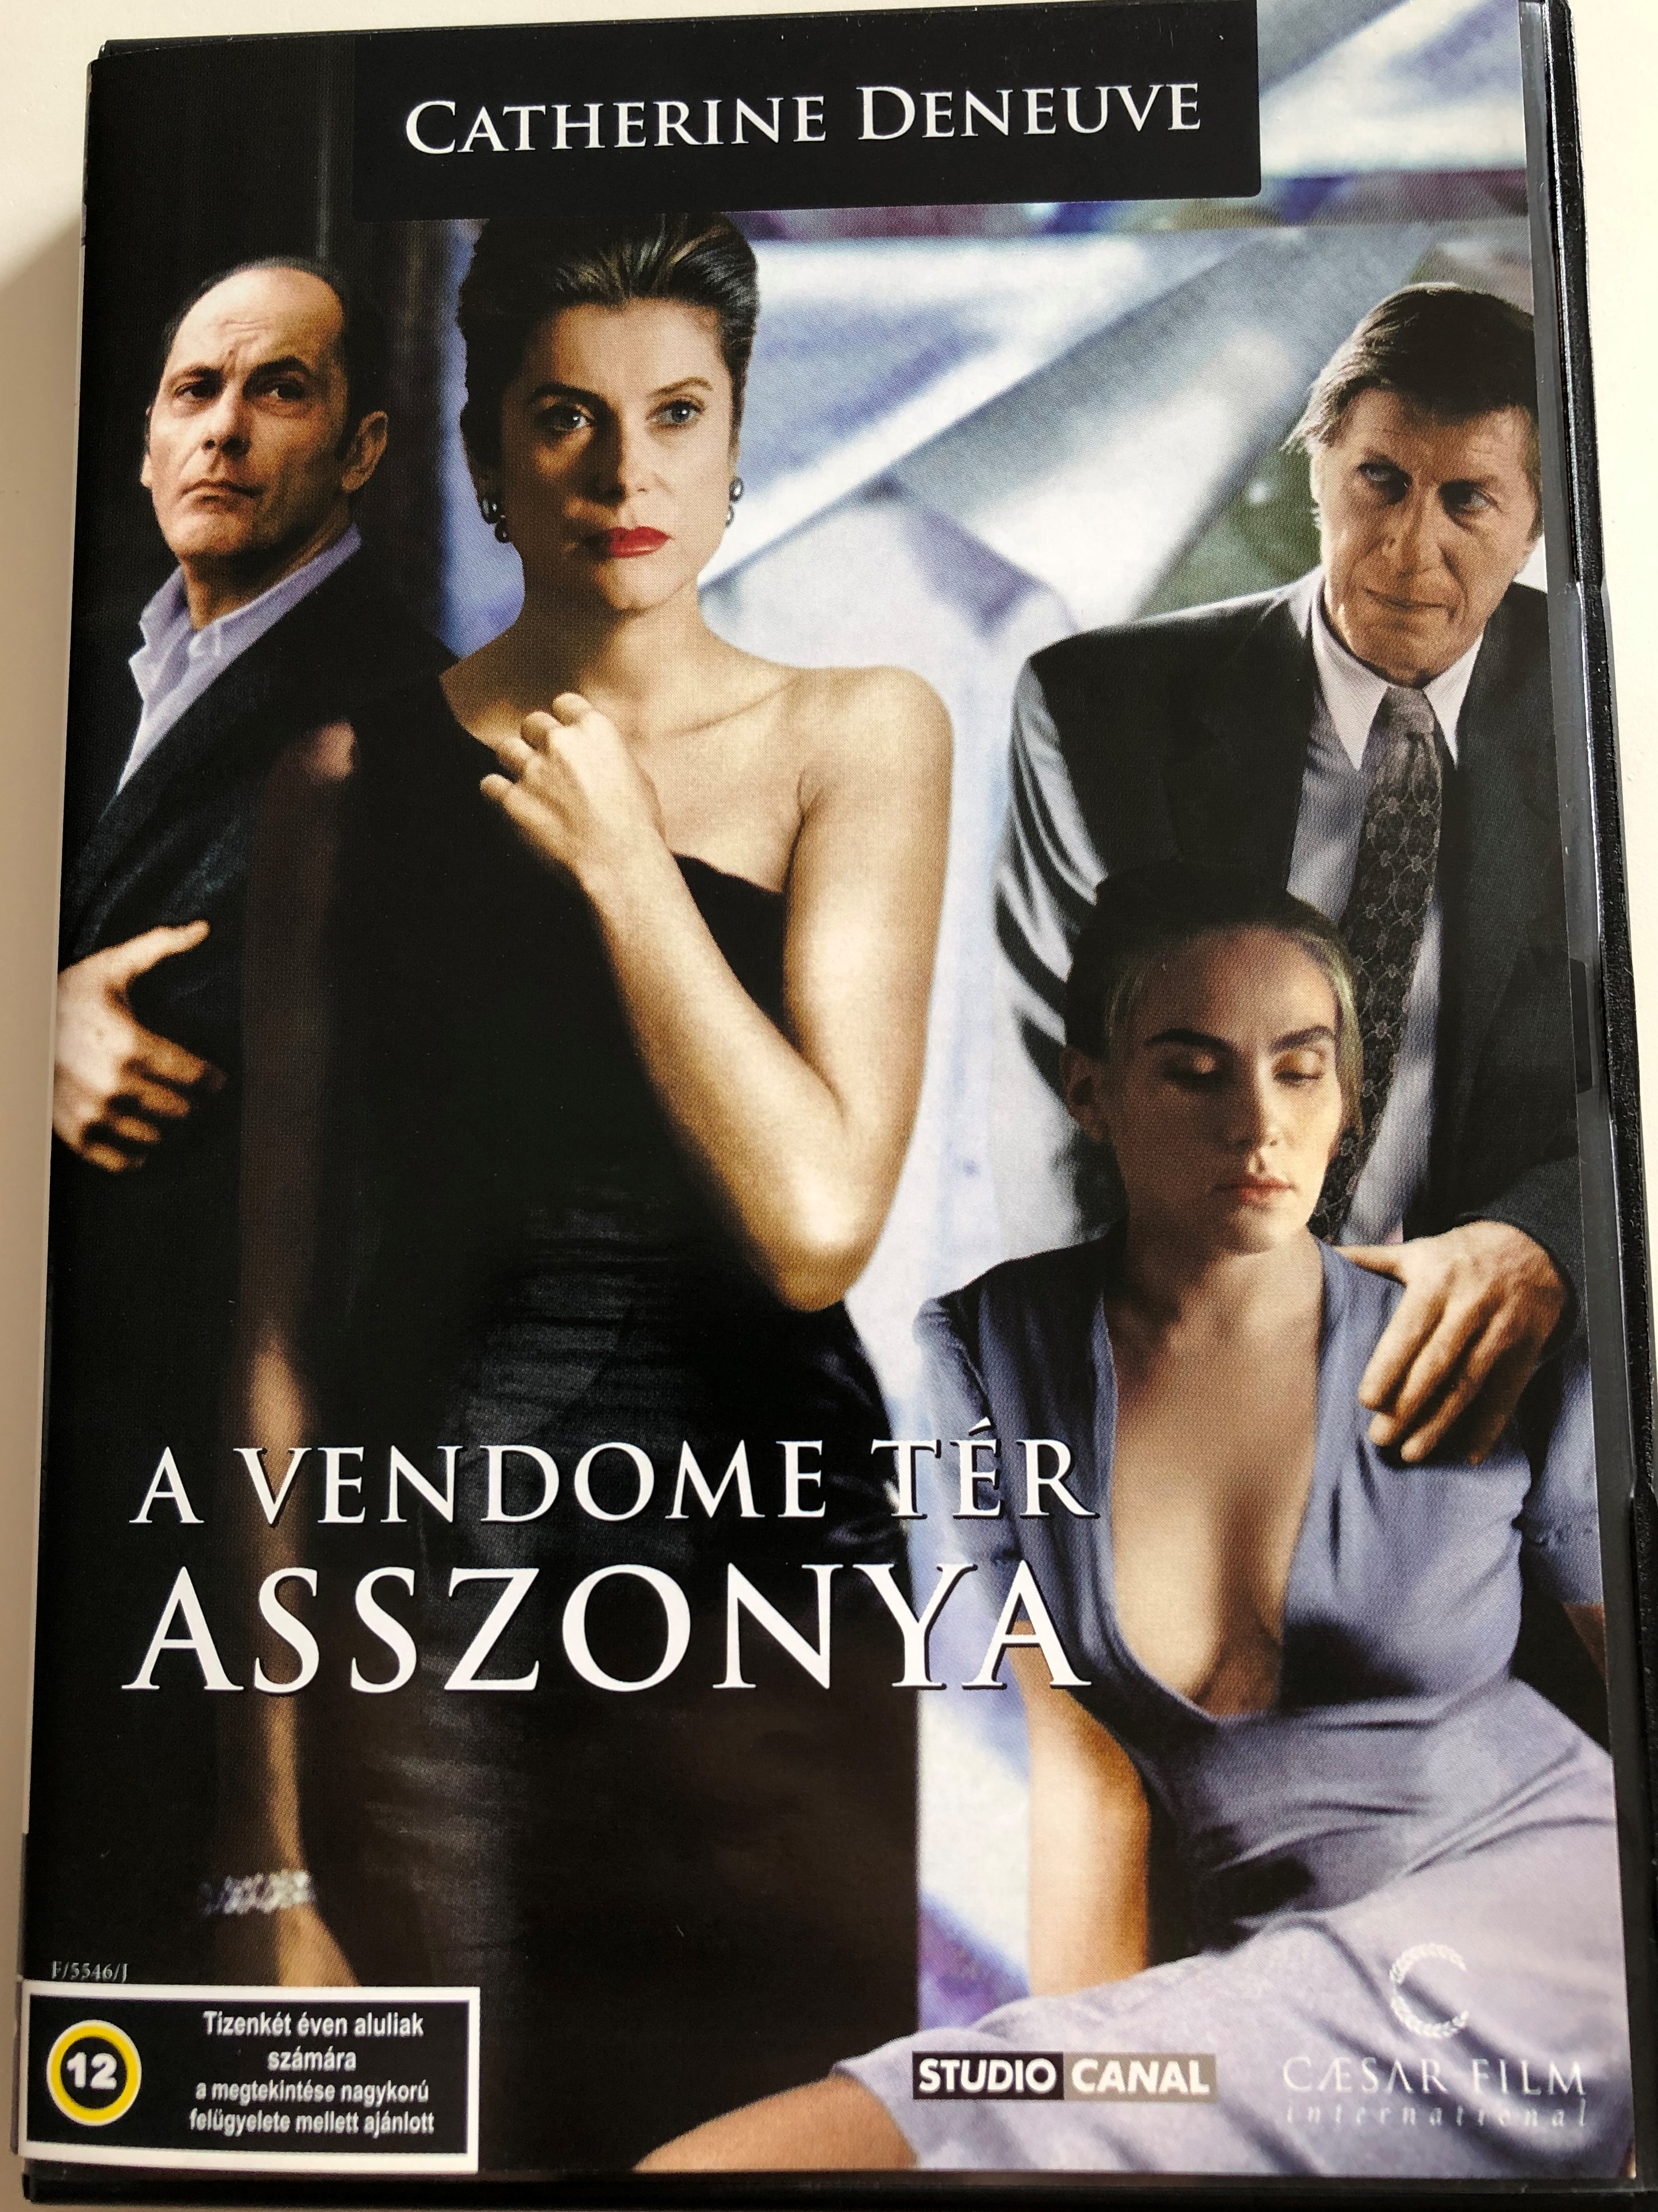 place-vendome-dvd-1998-a-vendome-t-r-asszonya-directed-by-nicole-carcia-starring-catherine-deneuve-jean-pierre-bacri-emmanuelle-seigner-jacques-dutronc-1-.jpg